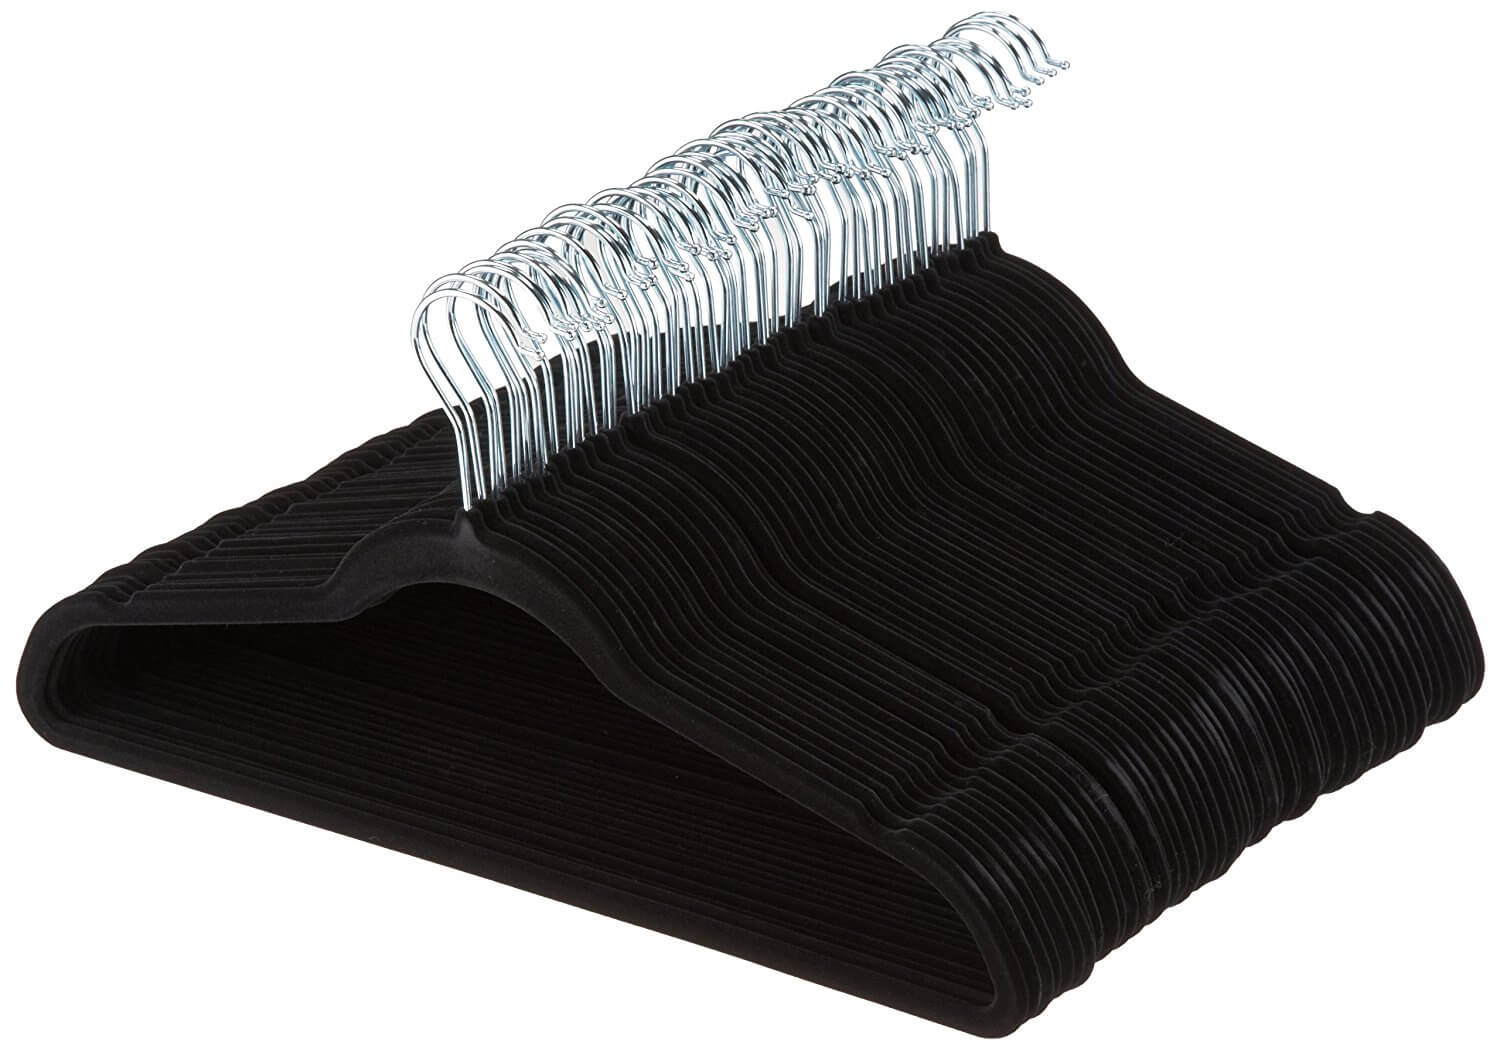 Velvet Suit Hangers - 50-Pack, Black (and Gray)